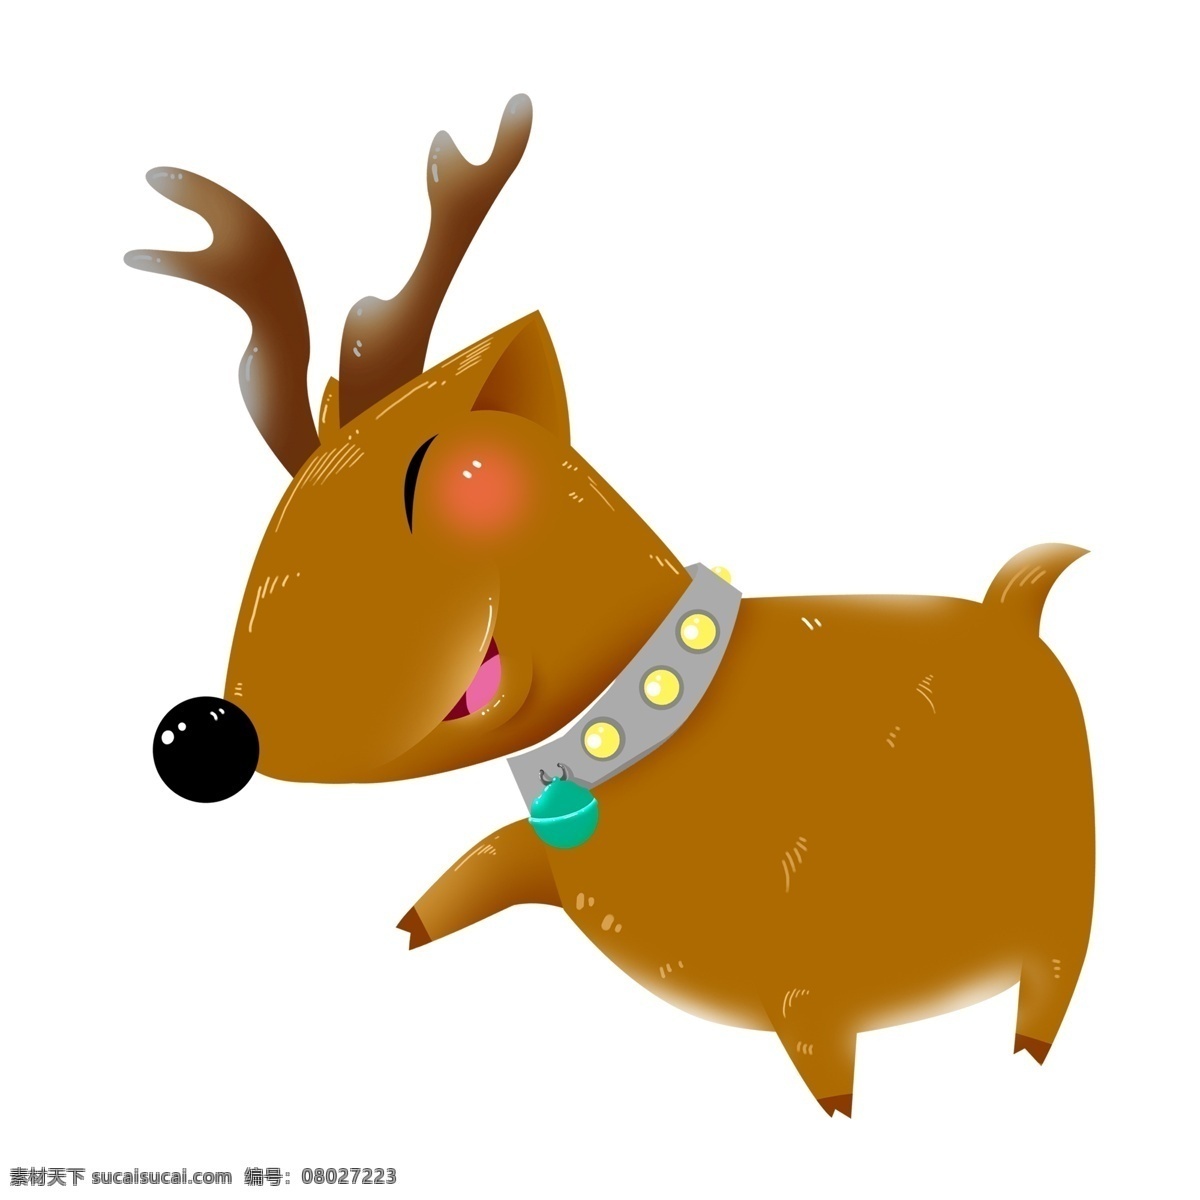 圣诞节 卡通 圣诞 麋鹿 插画 动物 手绘 圣诞元素 12月25日